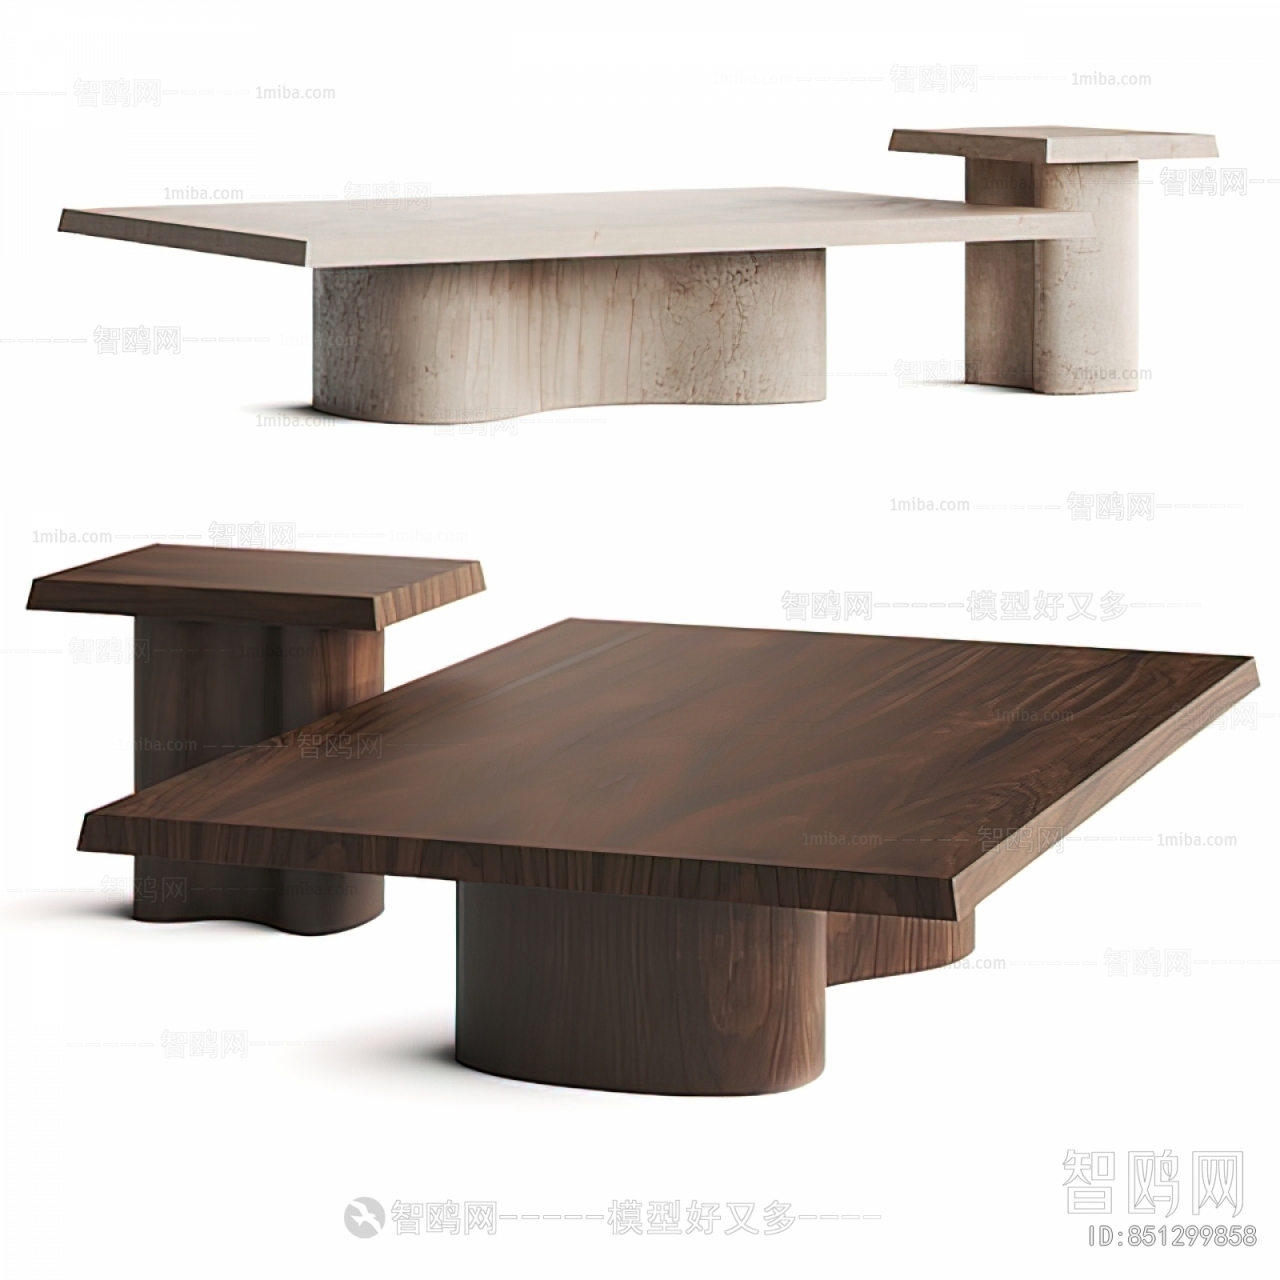 Wabi-sabi Style Coffee Table